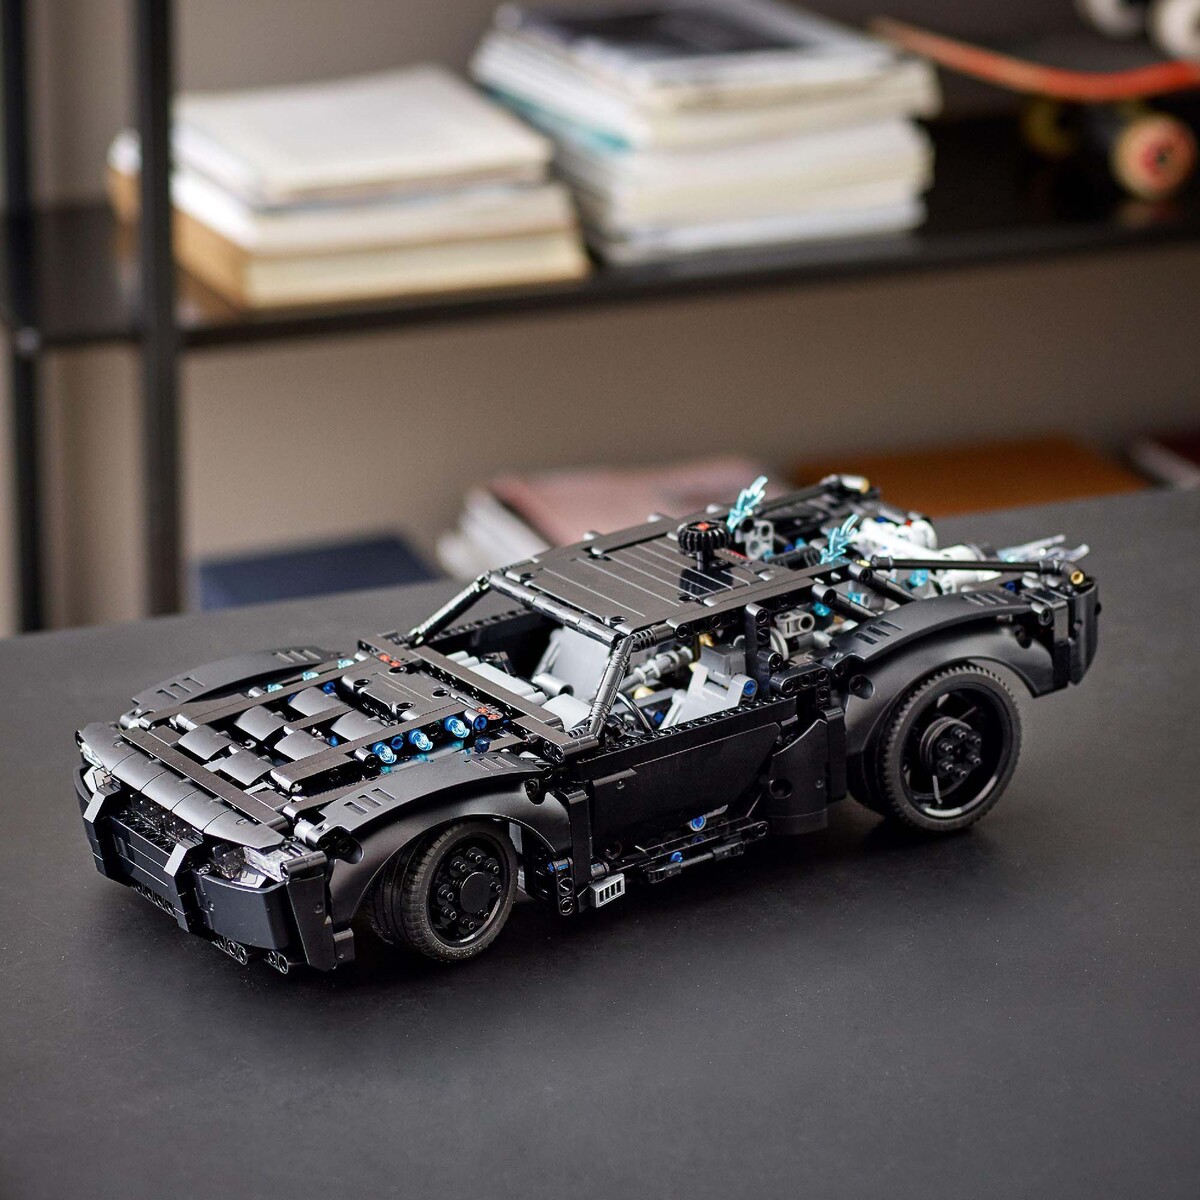 Lego Batman Batmobile 42127